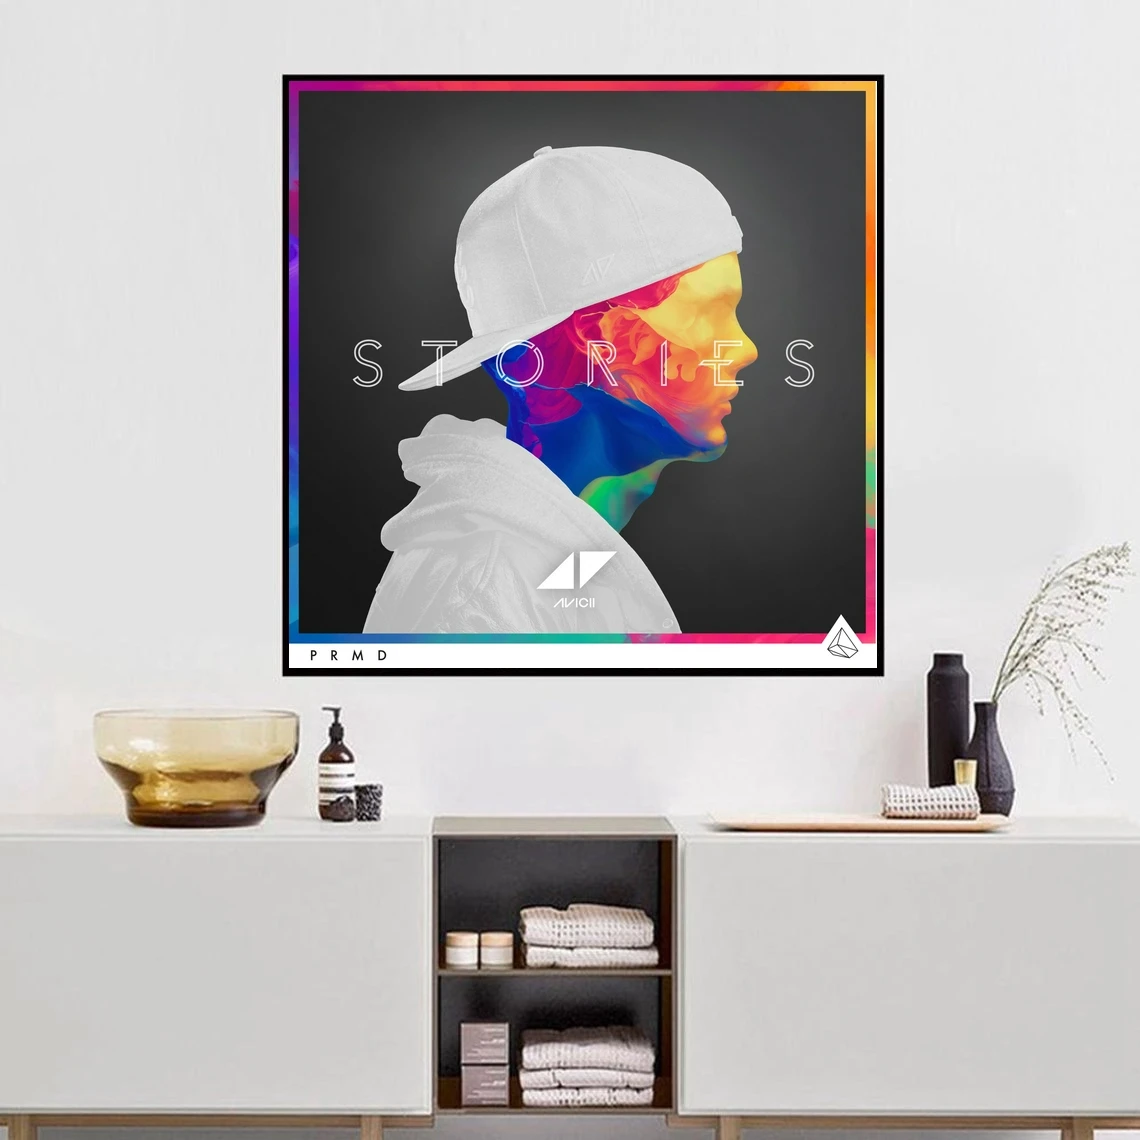 Avicii Stories Music Album Cover Poster Canvas Print Home ( No Frame )